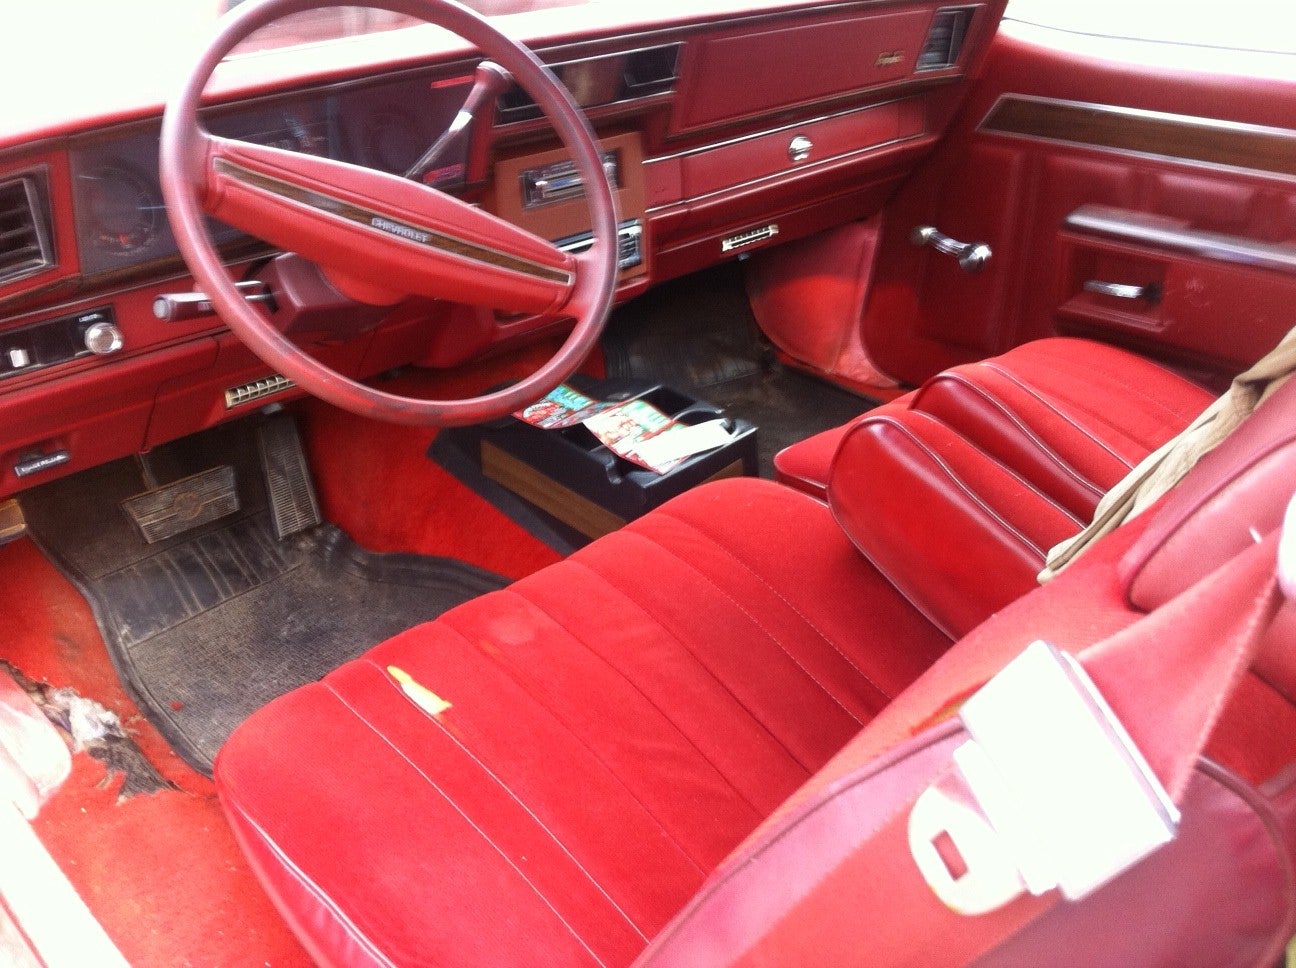 1977 Chevrolet Impala - Pictures - CarGurus